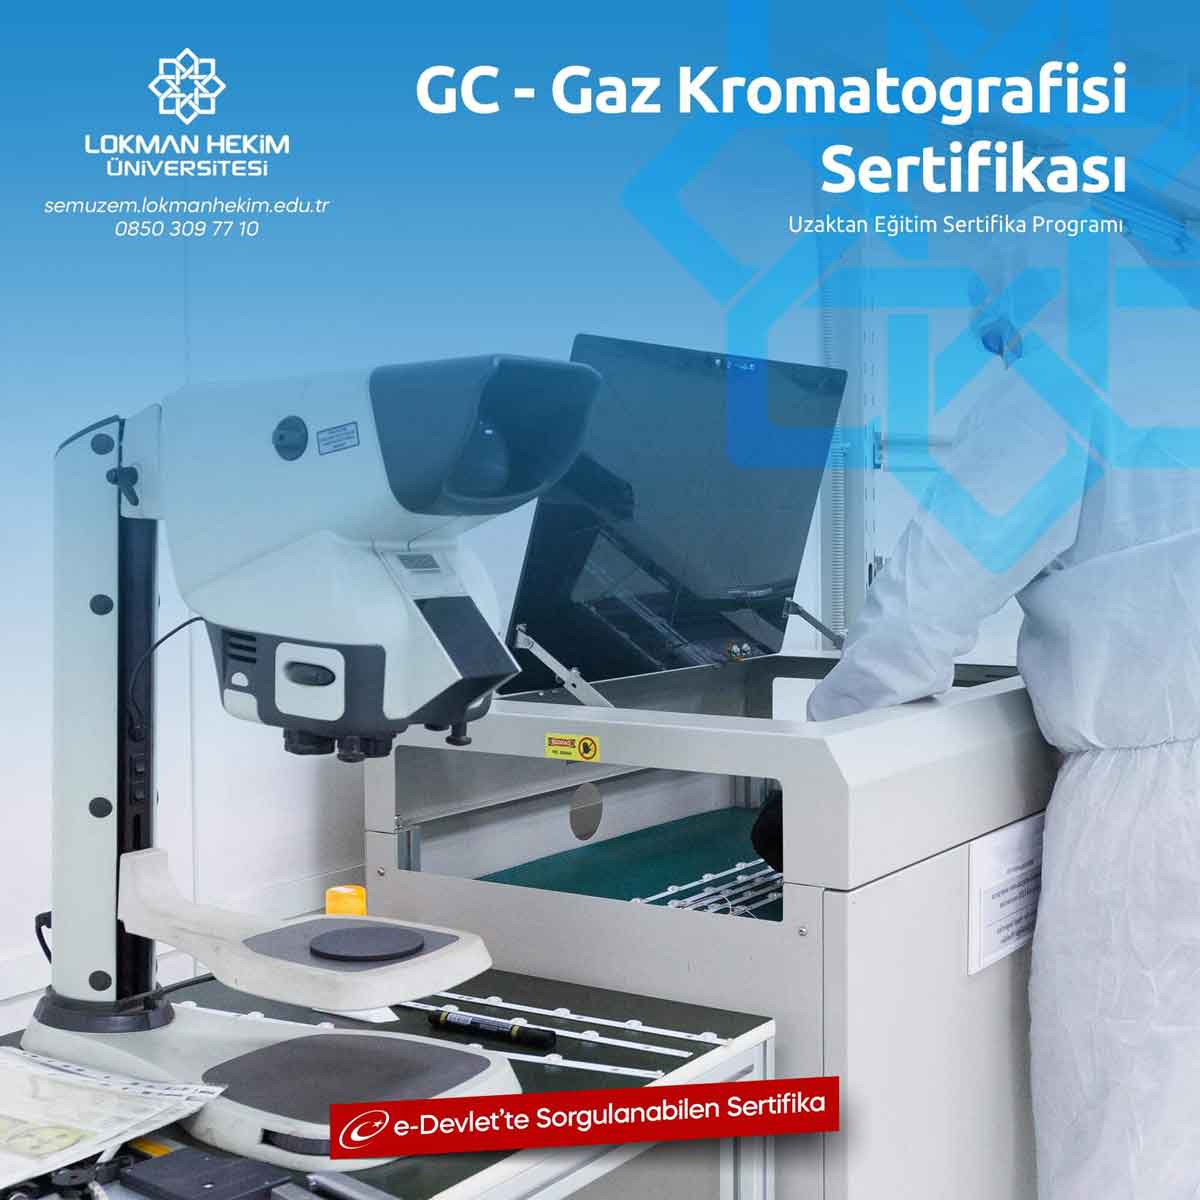 GC - Gaz Kromatografisi Sertifikası